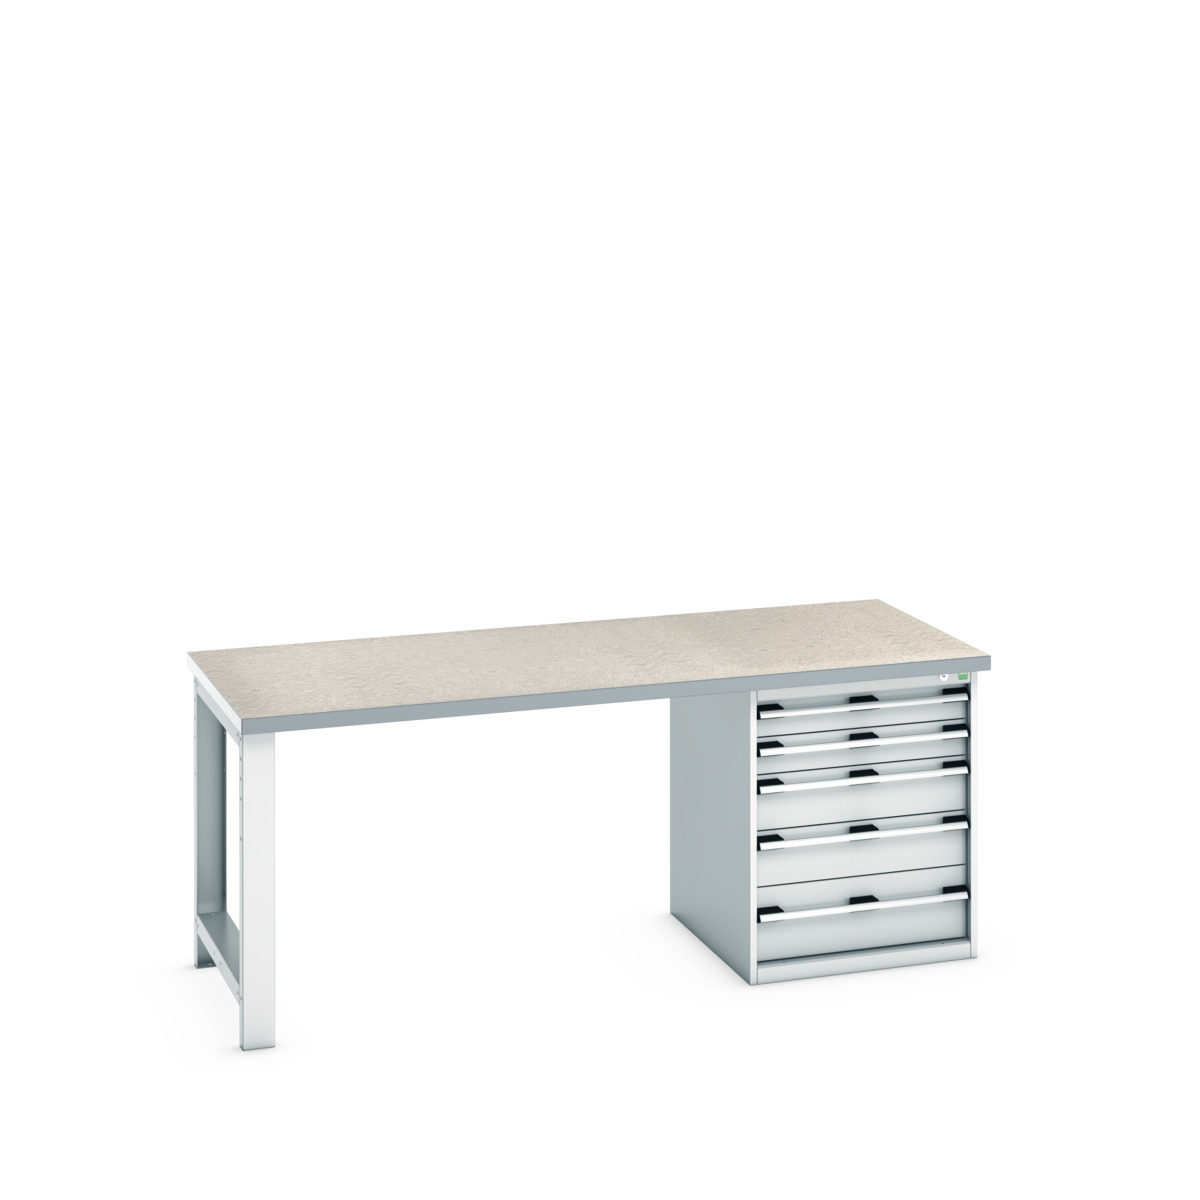 41004112.16V - cubio pedestal bench (lino)